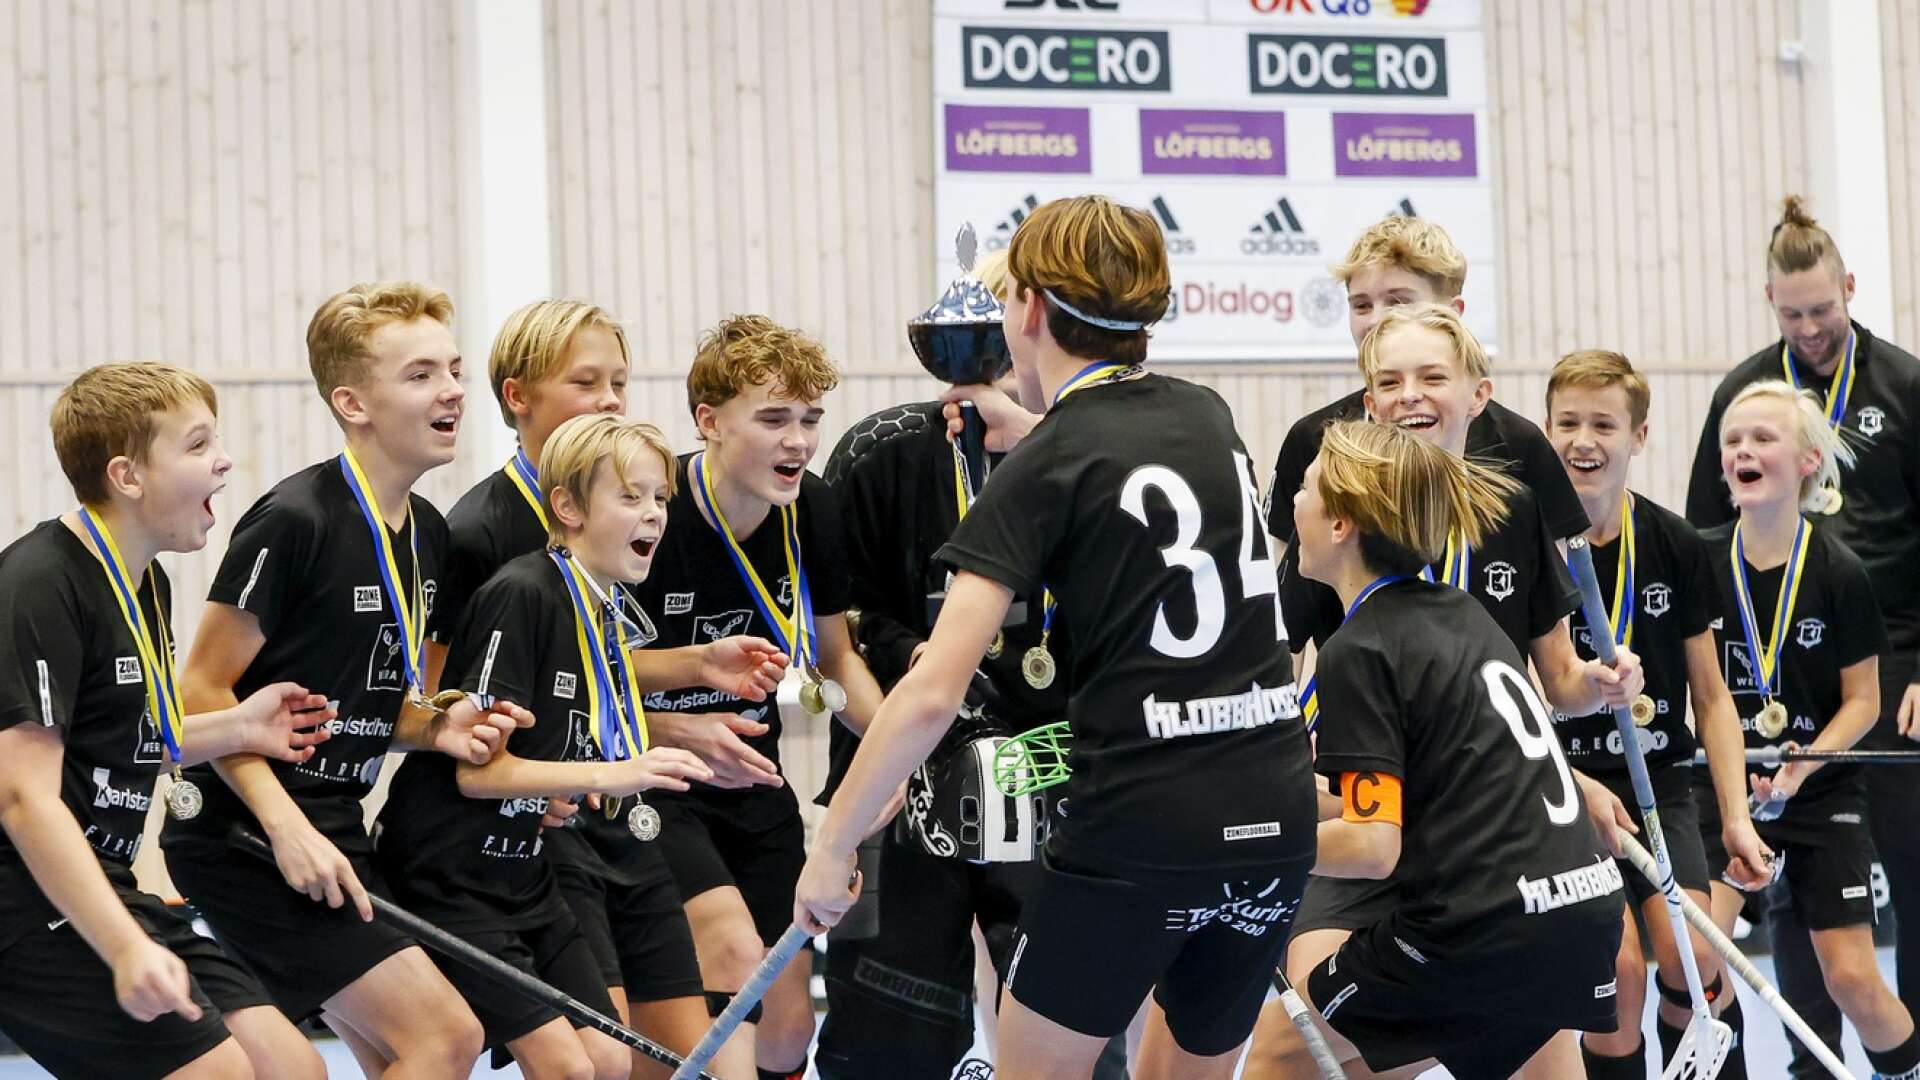 Hultsberg 1 och Hultsberg 2 möttes i finalen av Lilla VM, delade på guld och silver, och firade tillsammans.